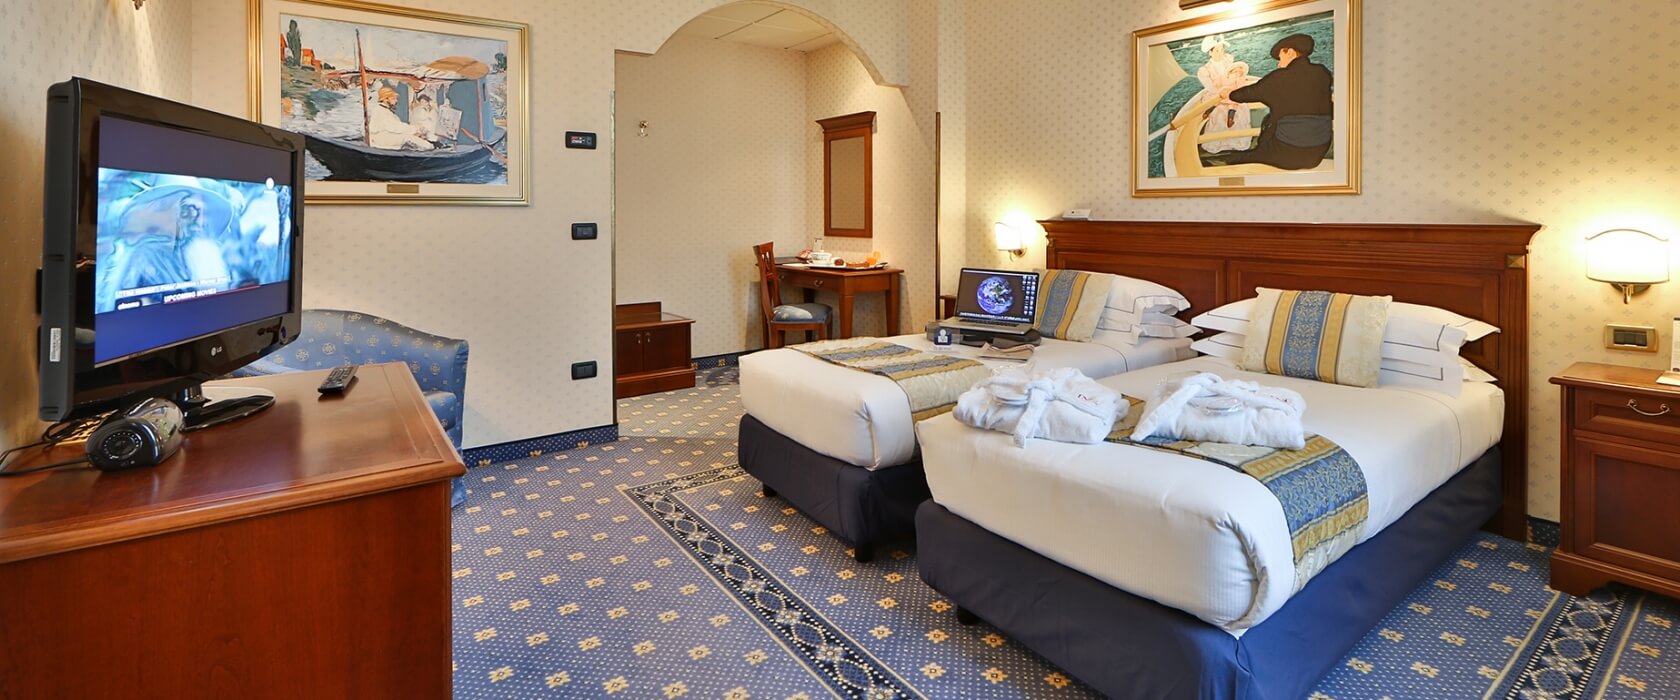 Il BW Classic Hotel propone ampie e accoglienti camere